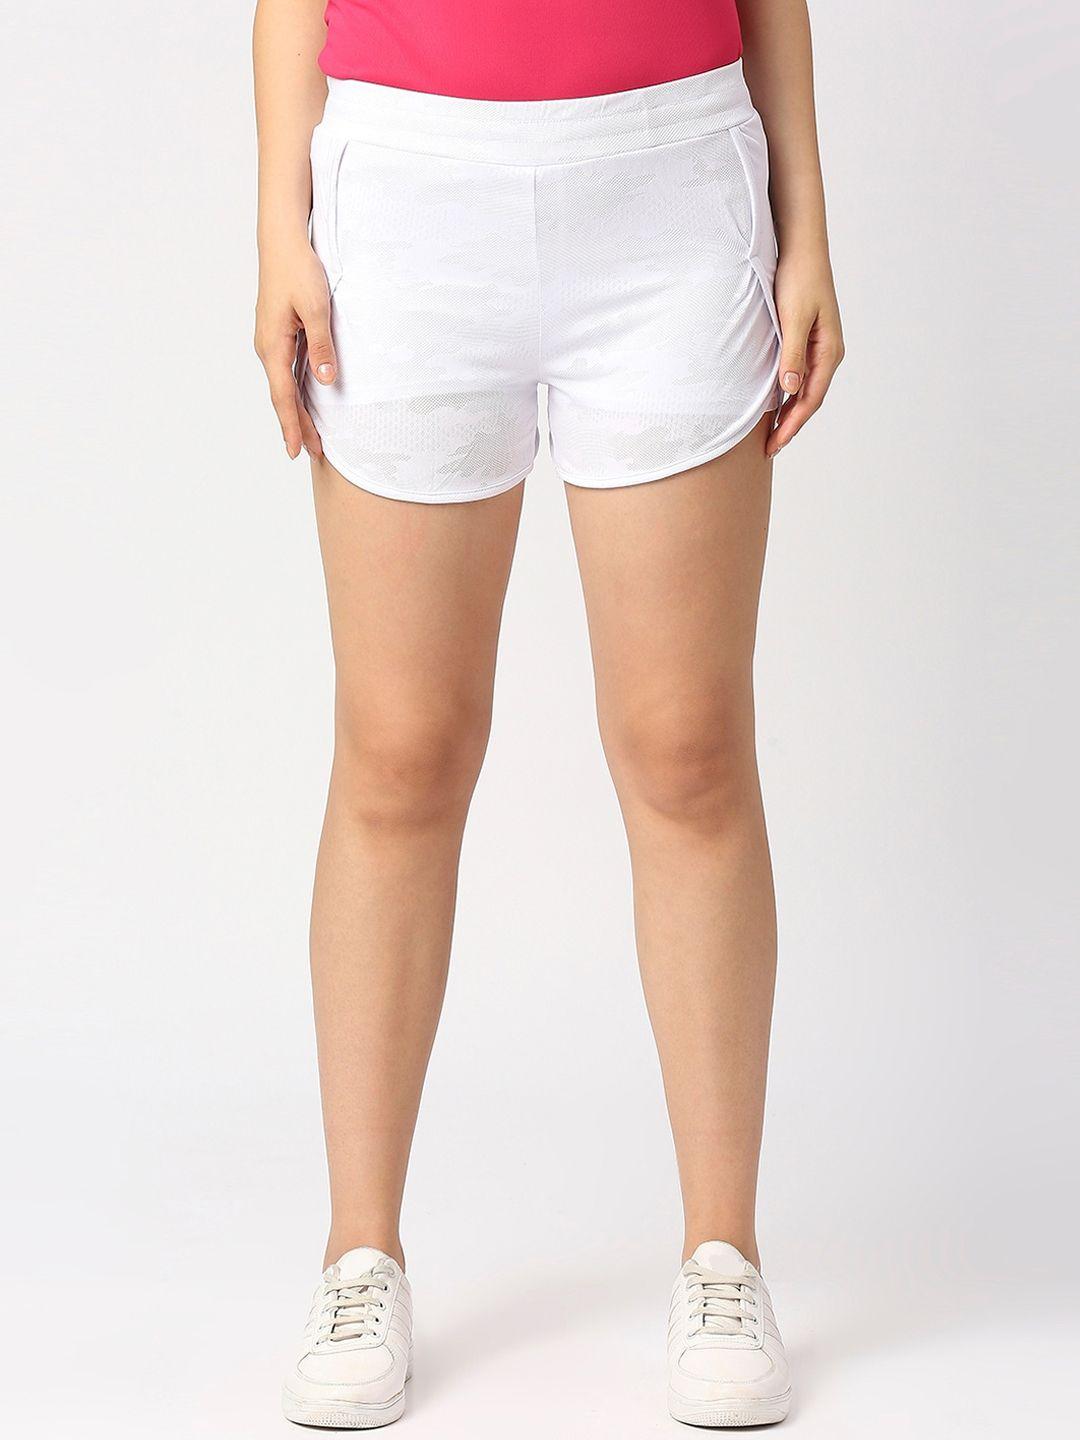 Lovable Sport Women White Slim Fit Running Hot Pants Shorts